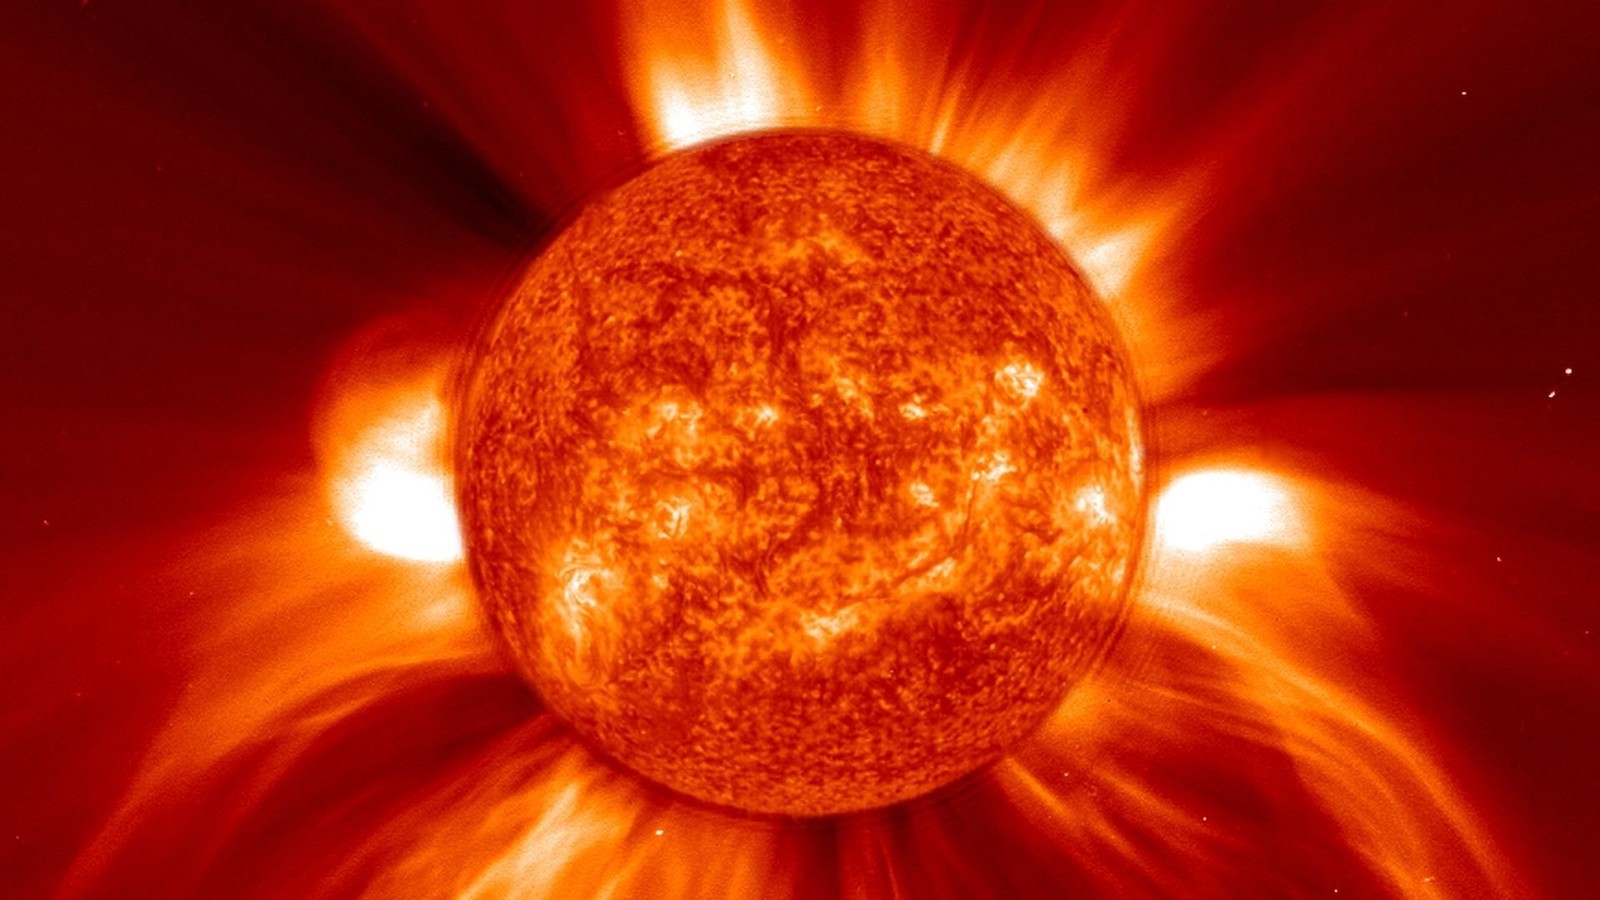 Tak wyglądała plama, która wywołała najsilniejszą znaną ludzkości burzę słoneczną. Czy może się to powtórzyć?